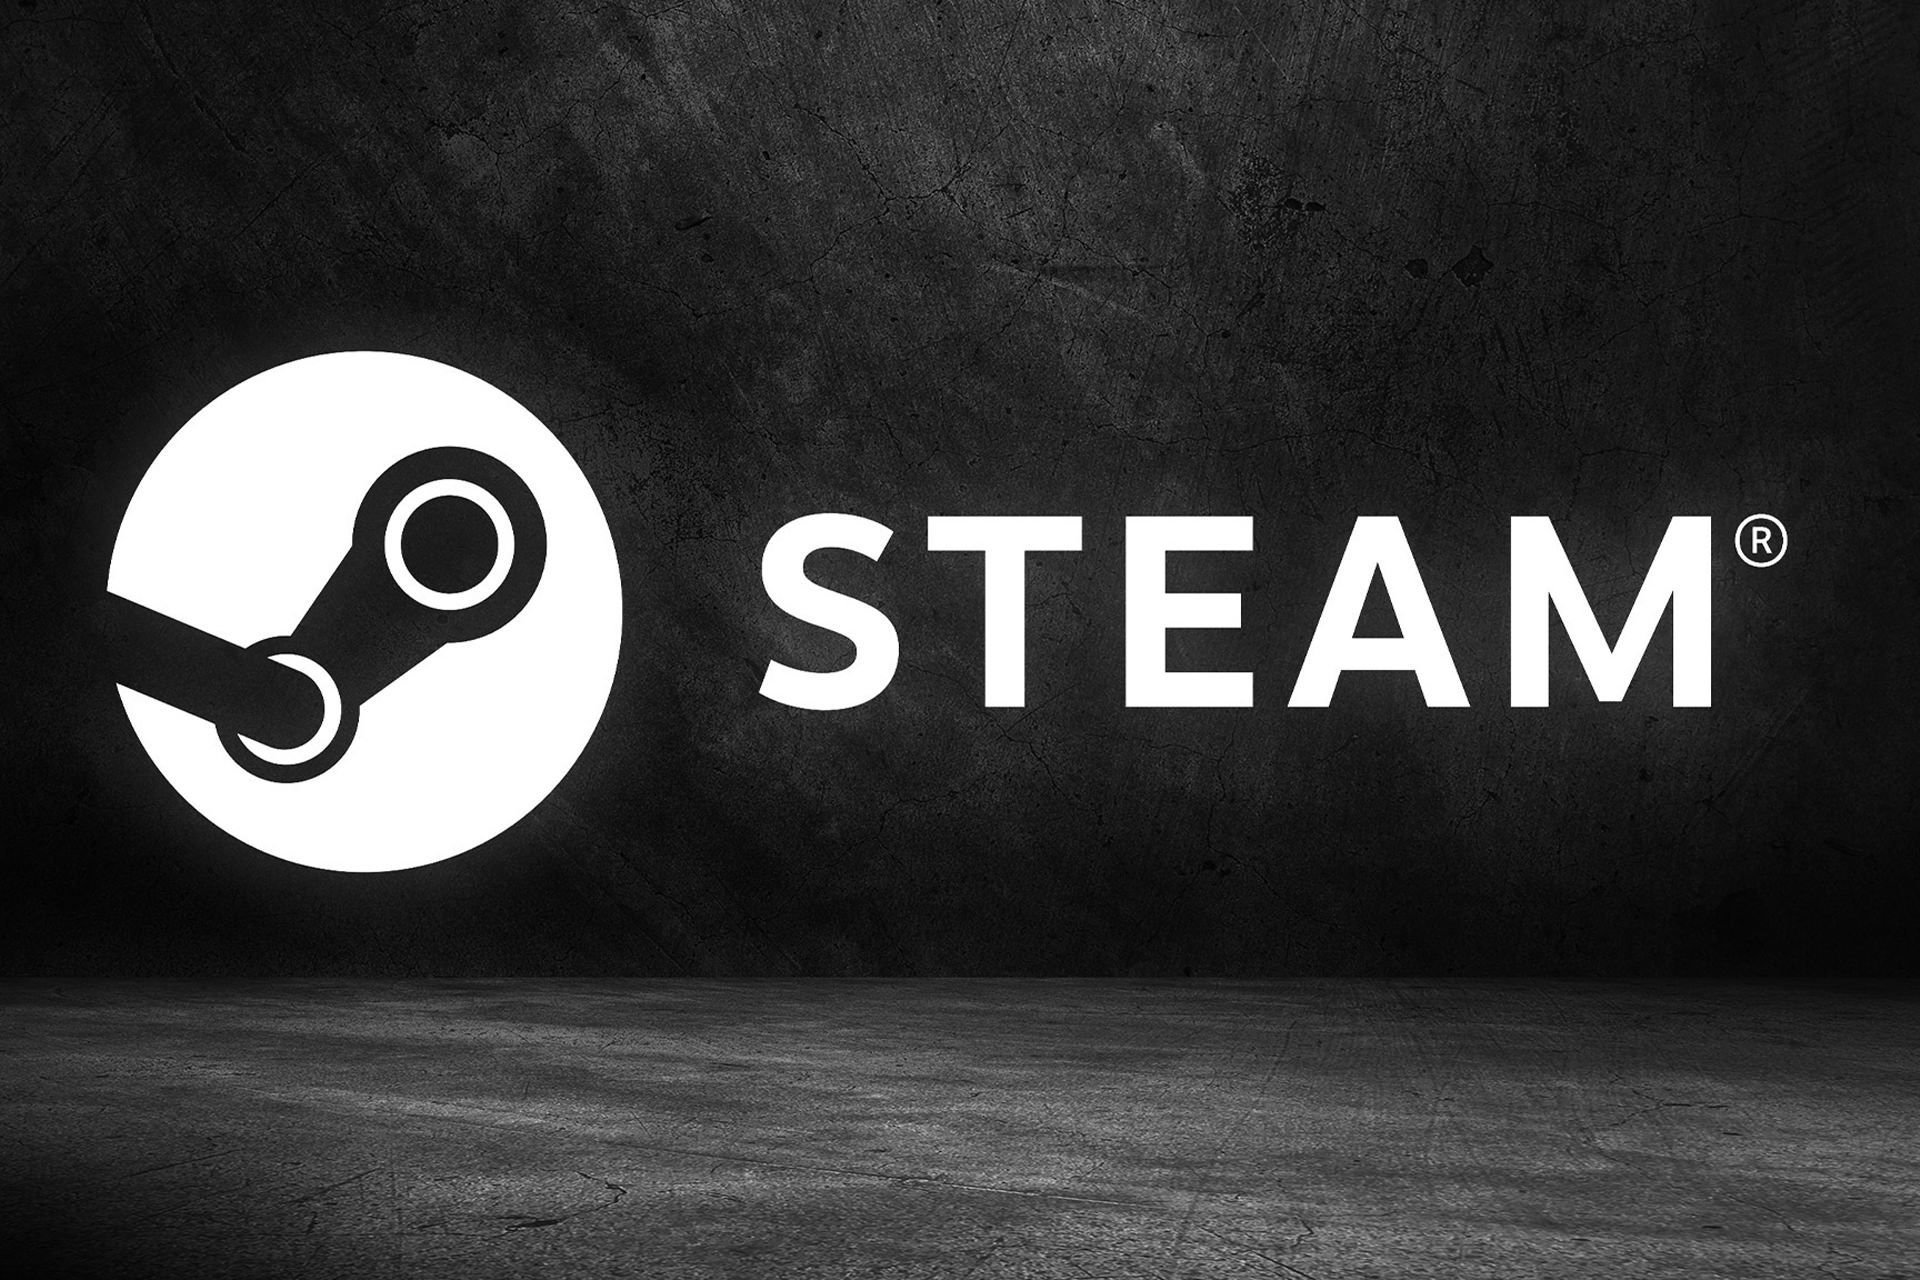 لوگو استیم / Steam در پس زمینه تاریک